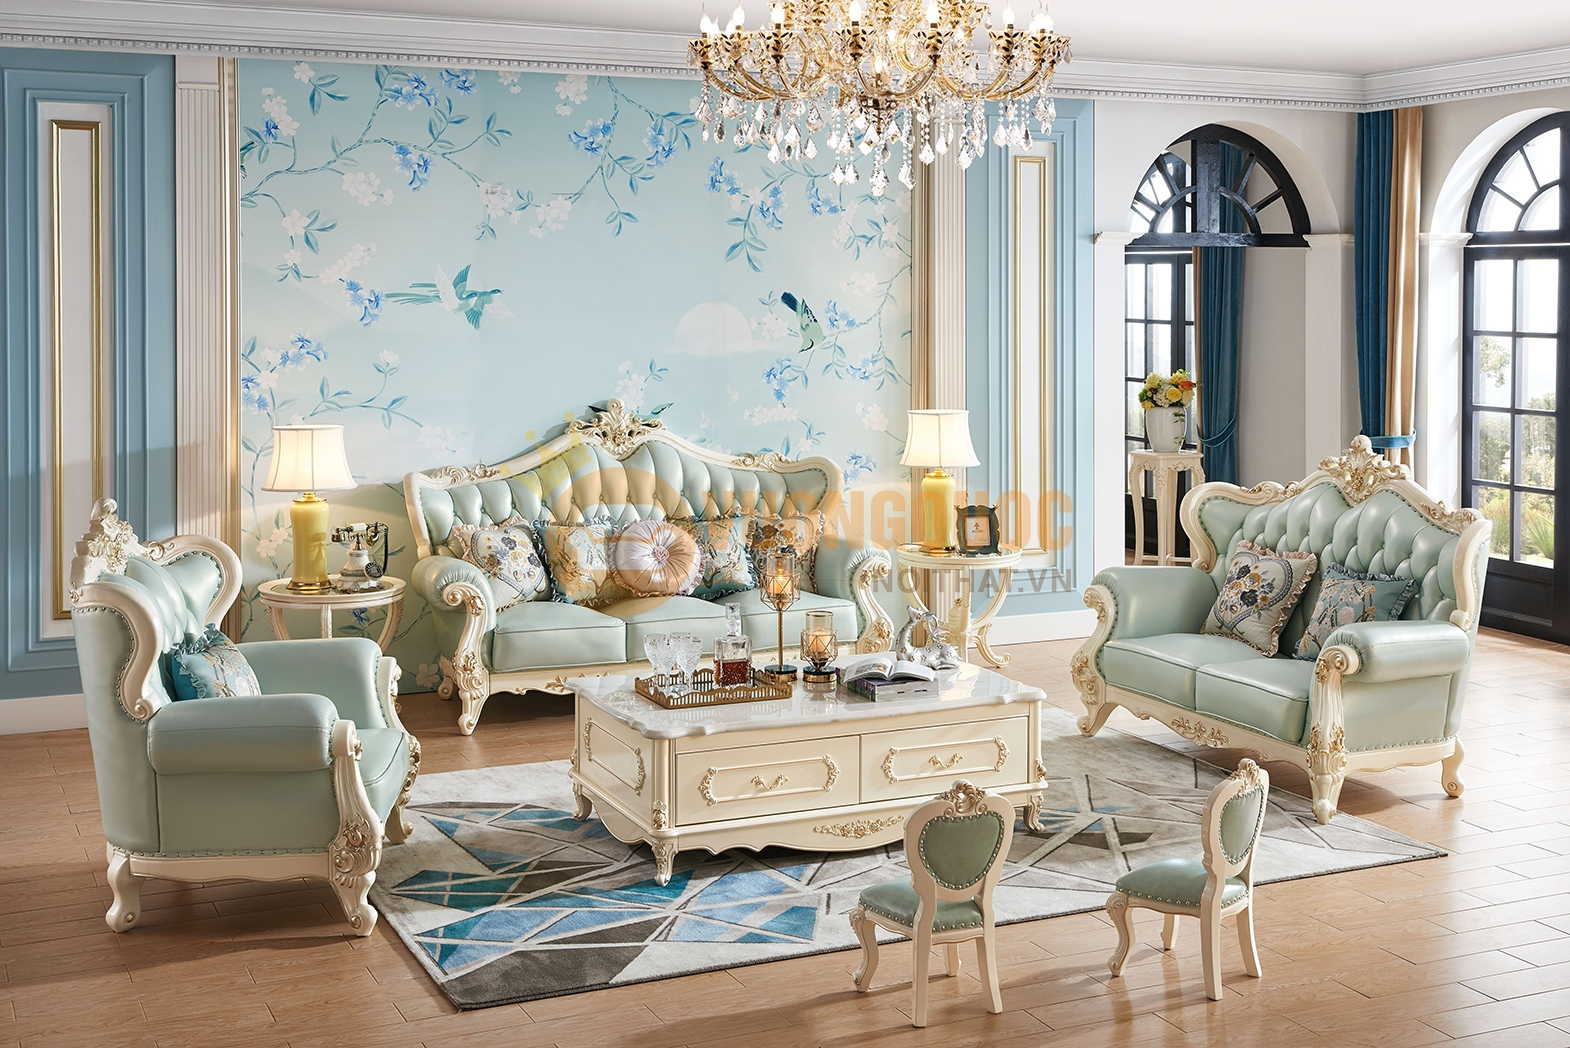 Bộ sofa phòng khách tân cổ điển màu xanh ngọc là sự kết hợp hoàn hảo giữa cái cổ điển và hiện đại. Vừa sang trọng vừa tươi mới, sofa sẽ làm cho không gian phòng khách của bạn trở nên đẹp và thu hút. Click vào hình ảnh để thưởng thức vẻ ngoài tuyệt đẹp của bộ sofa này.